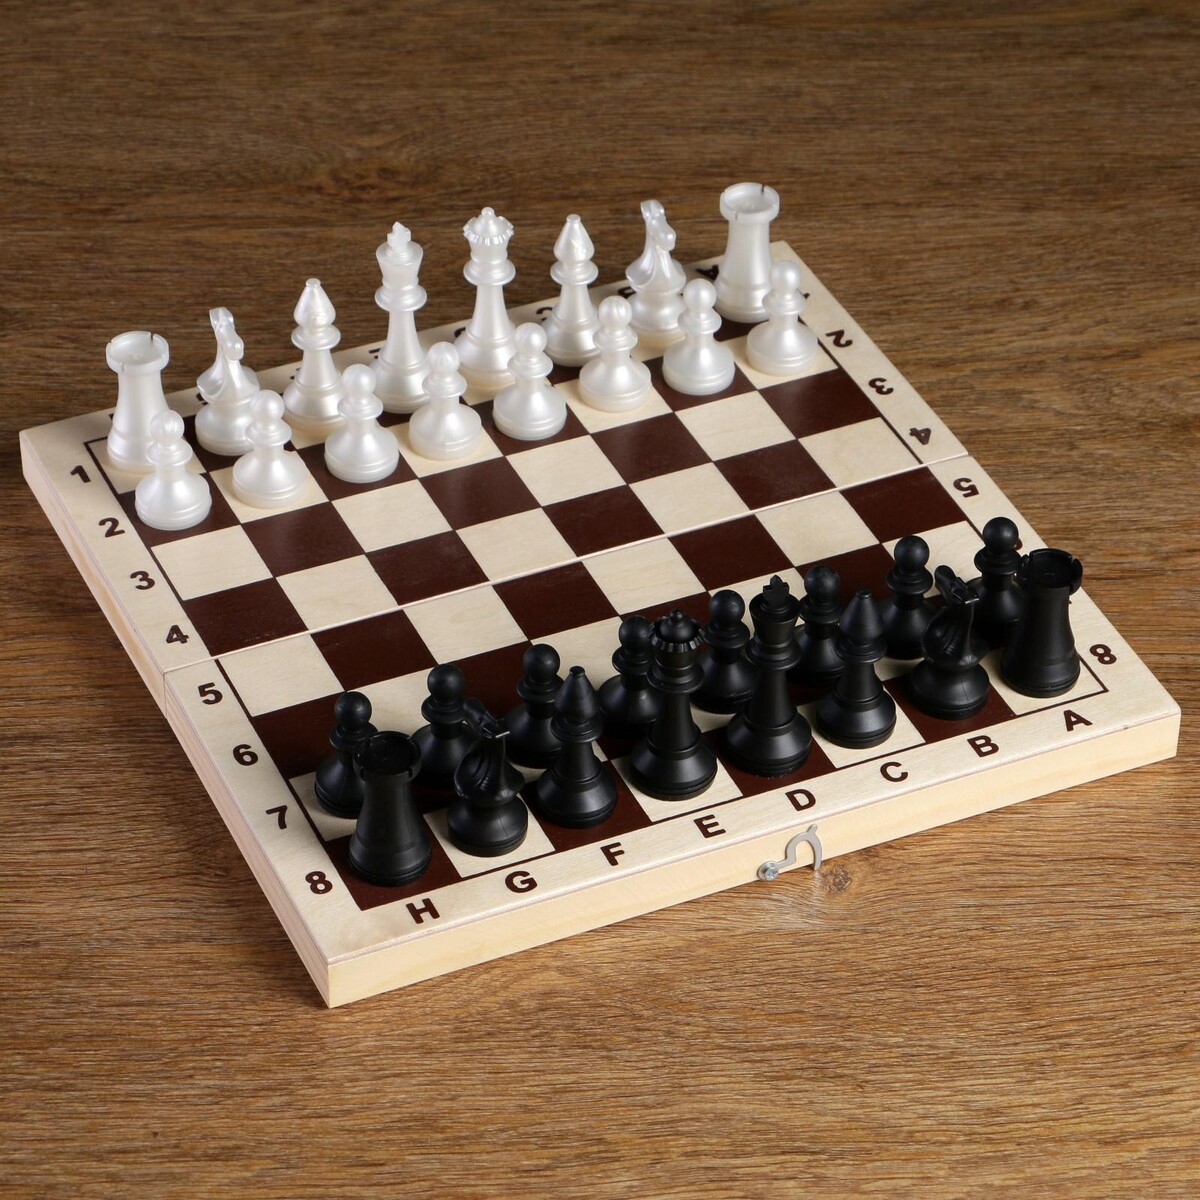 Шахматные фигуры обиходные, пластик, король h-7.2 см, пешка 4 см шахматные фигуры пластик король h 4 2 см пешка h 2 см